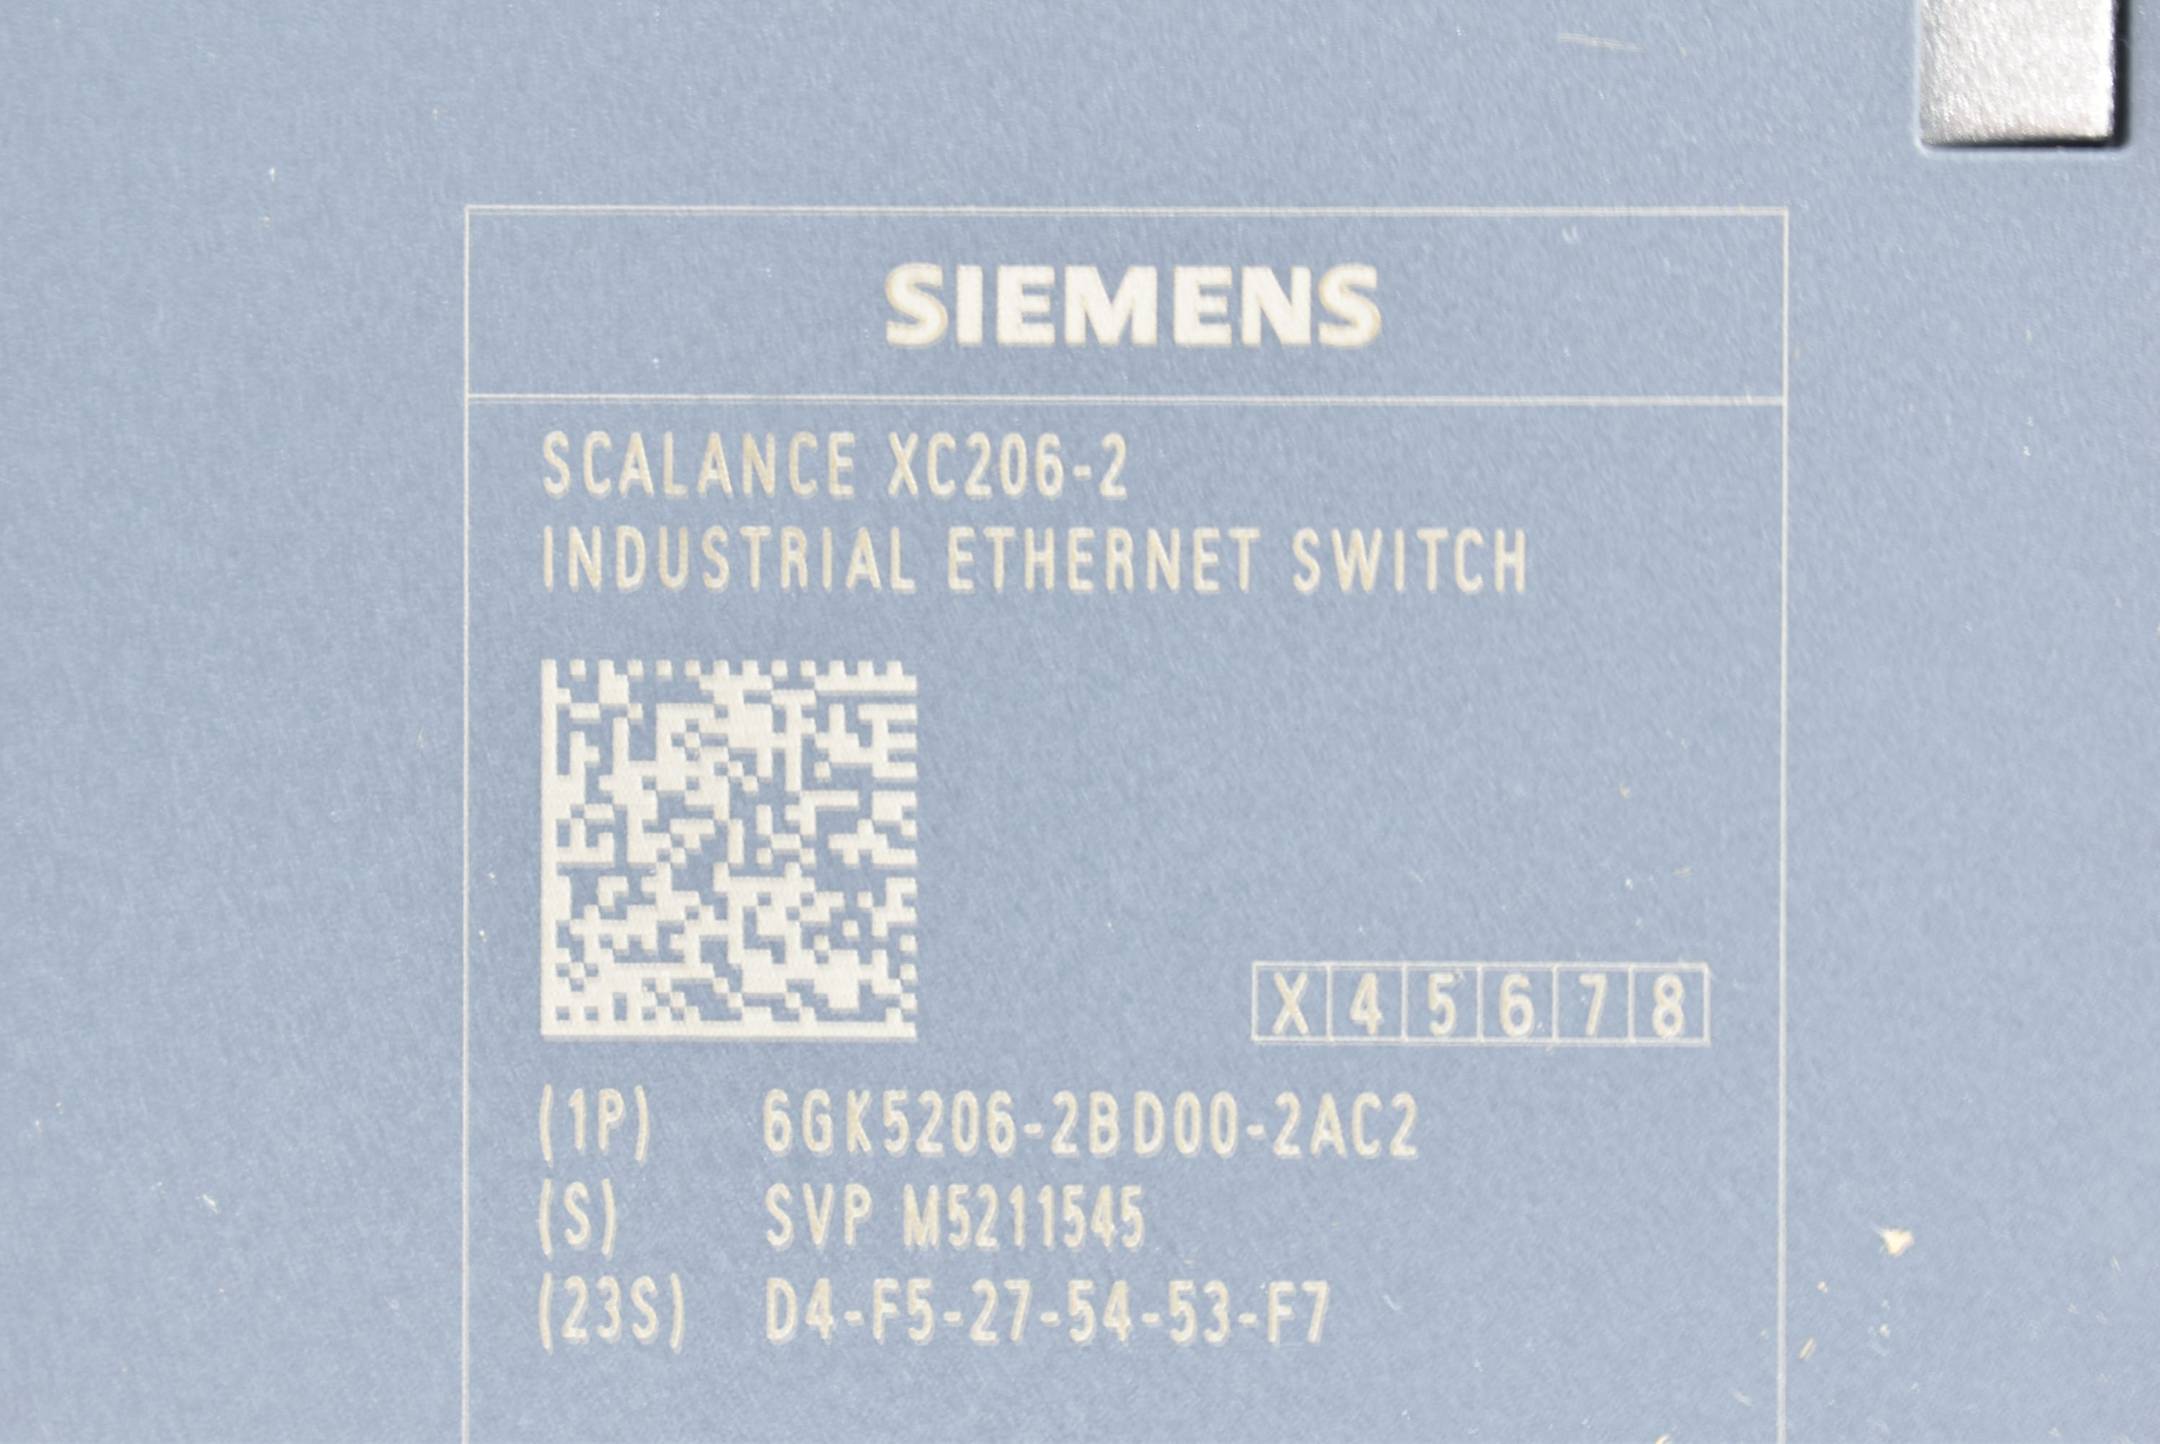 Siemens scalance XC206-2 6GK5 206-2BD00-2AC2 ( 6GK5206-2BD00-2AC2 ) E3